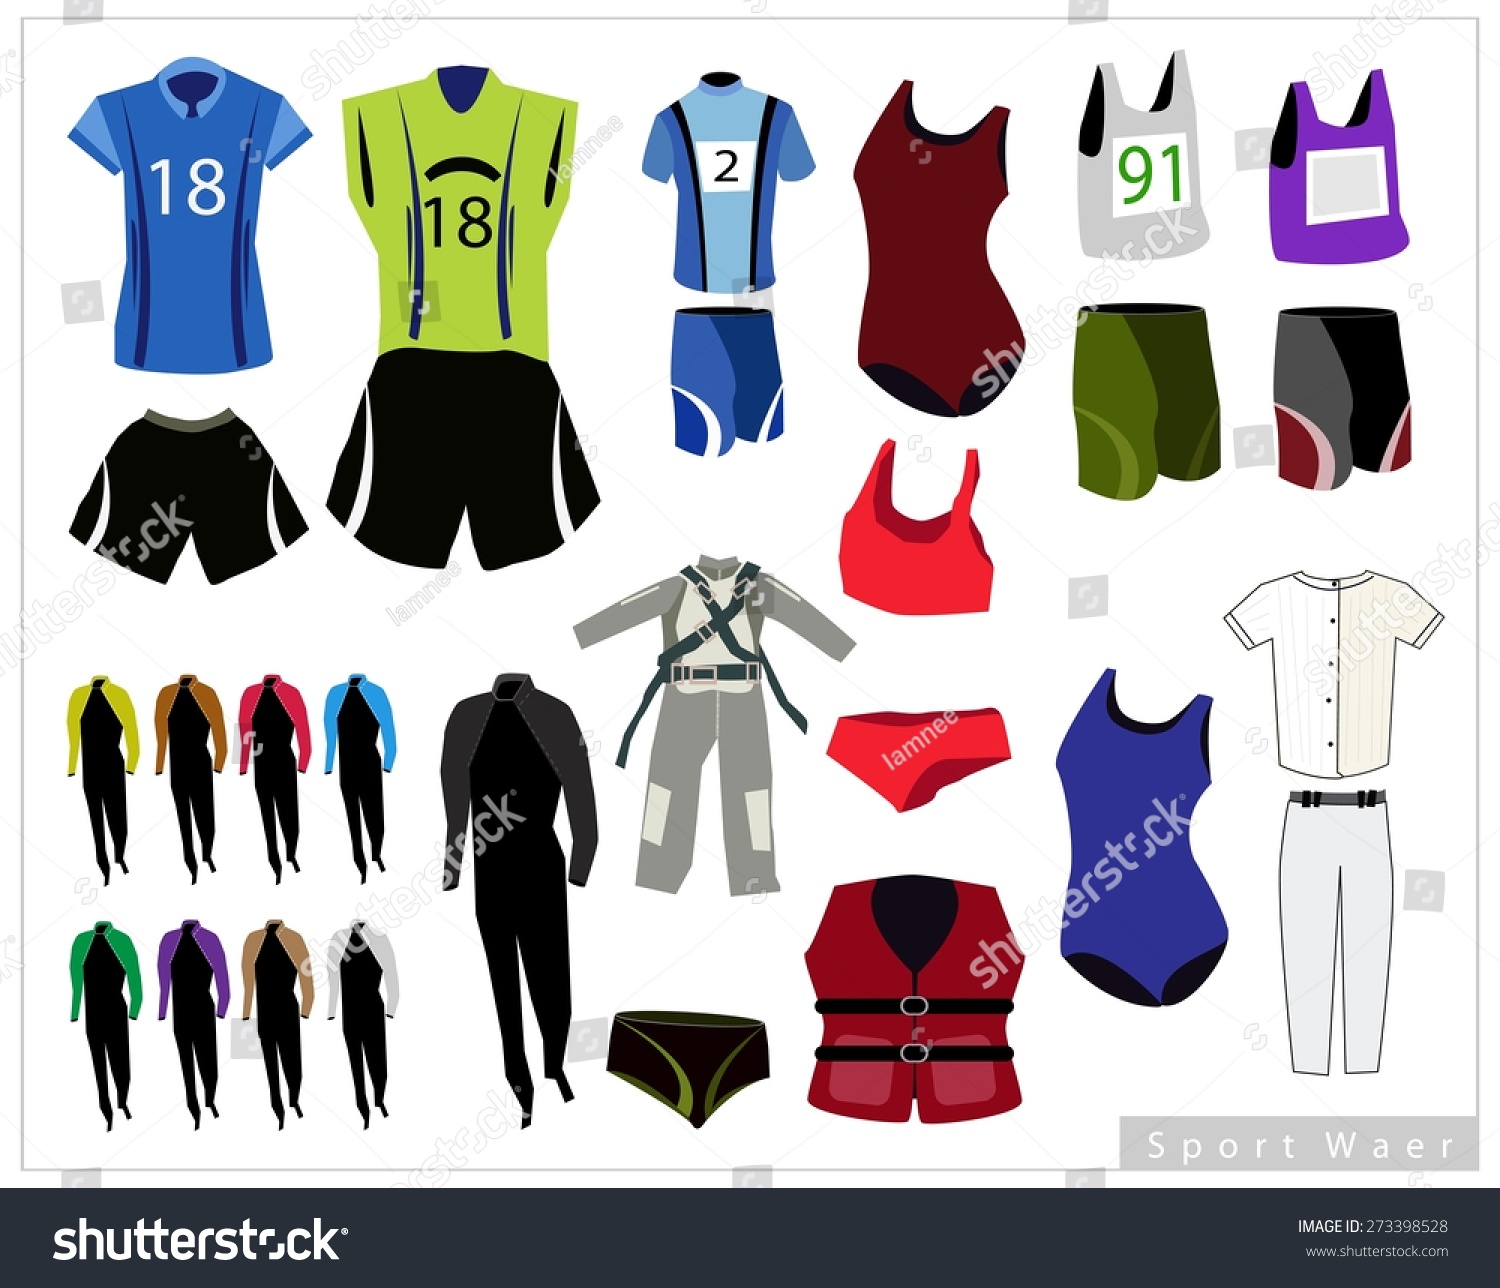 sportswears